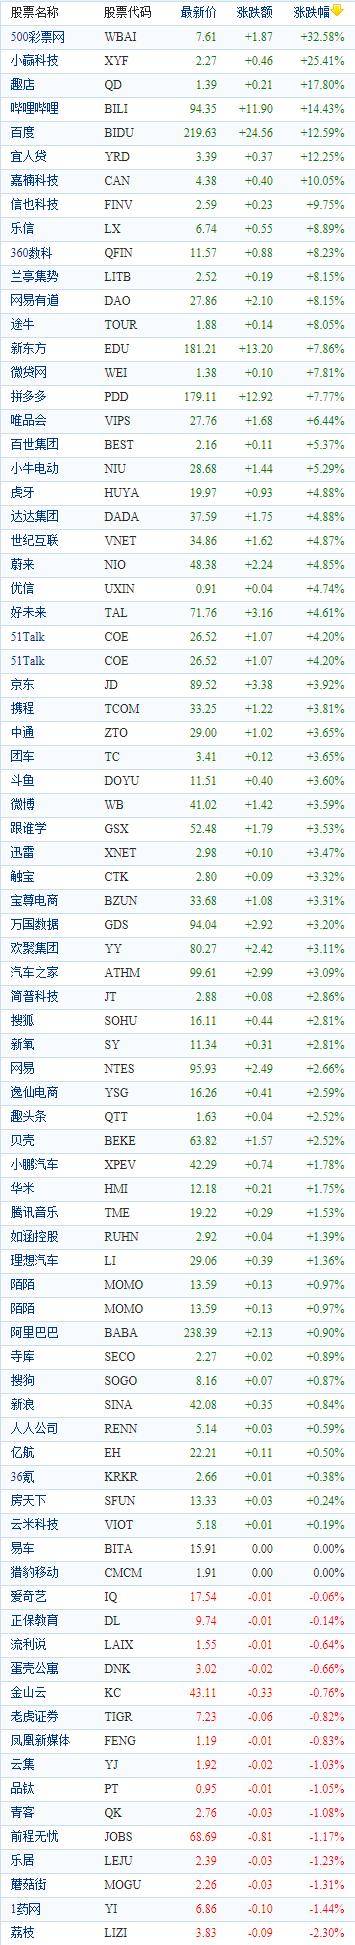 中國概念股周三收盤多數上漲 嗶哩嗶哩大漲近15% 科技 第1張